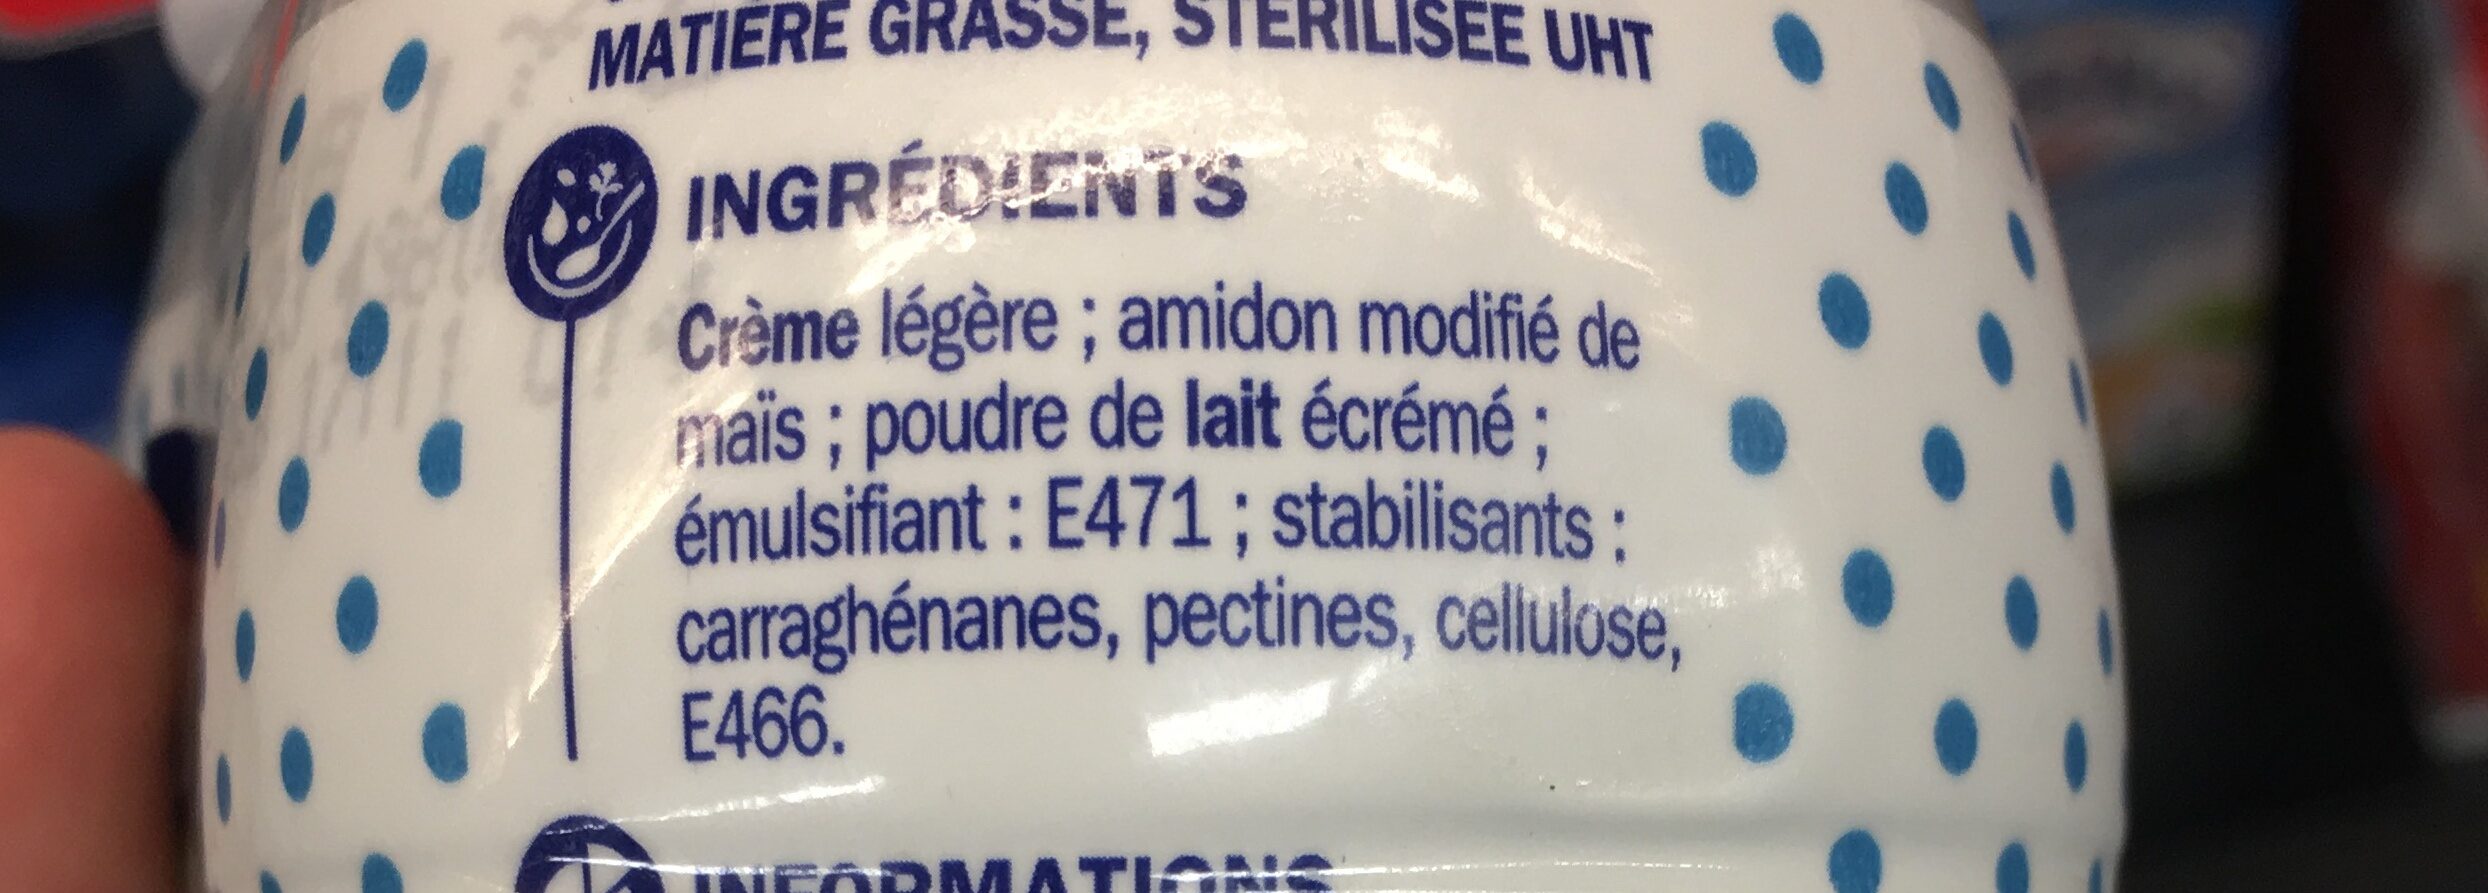 Crème liquide - Ingrédients